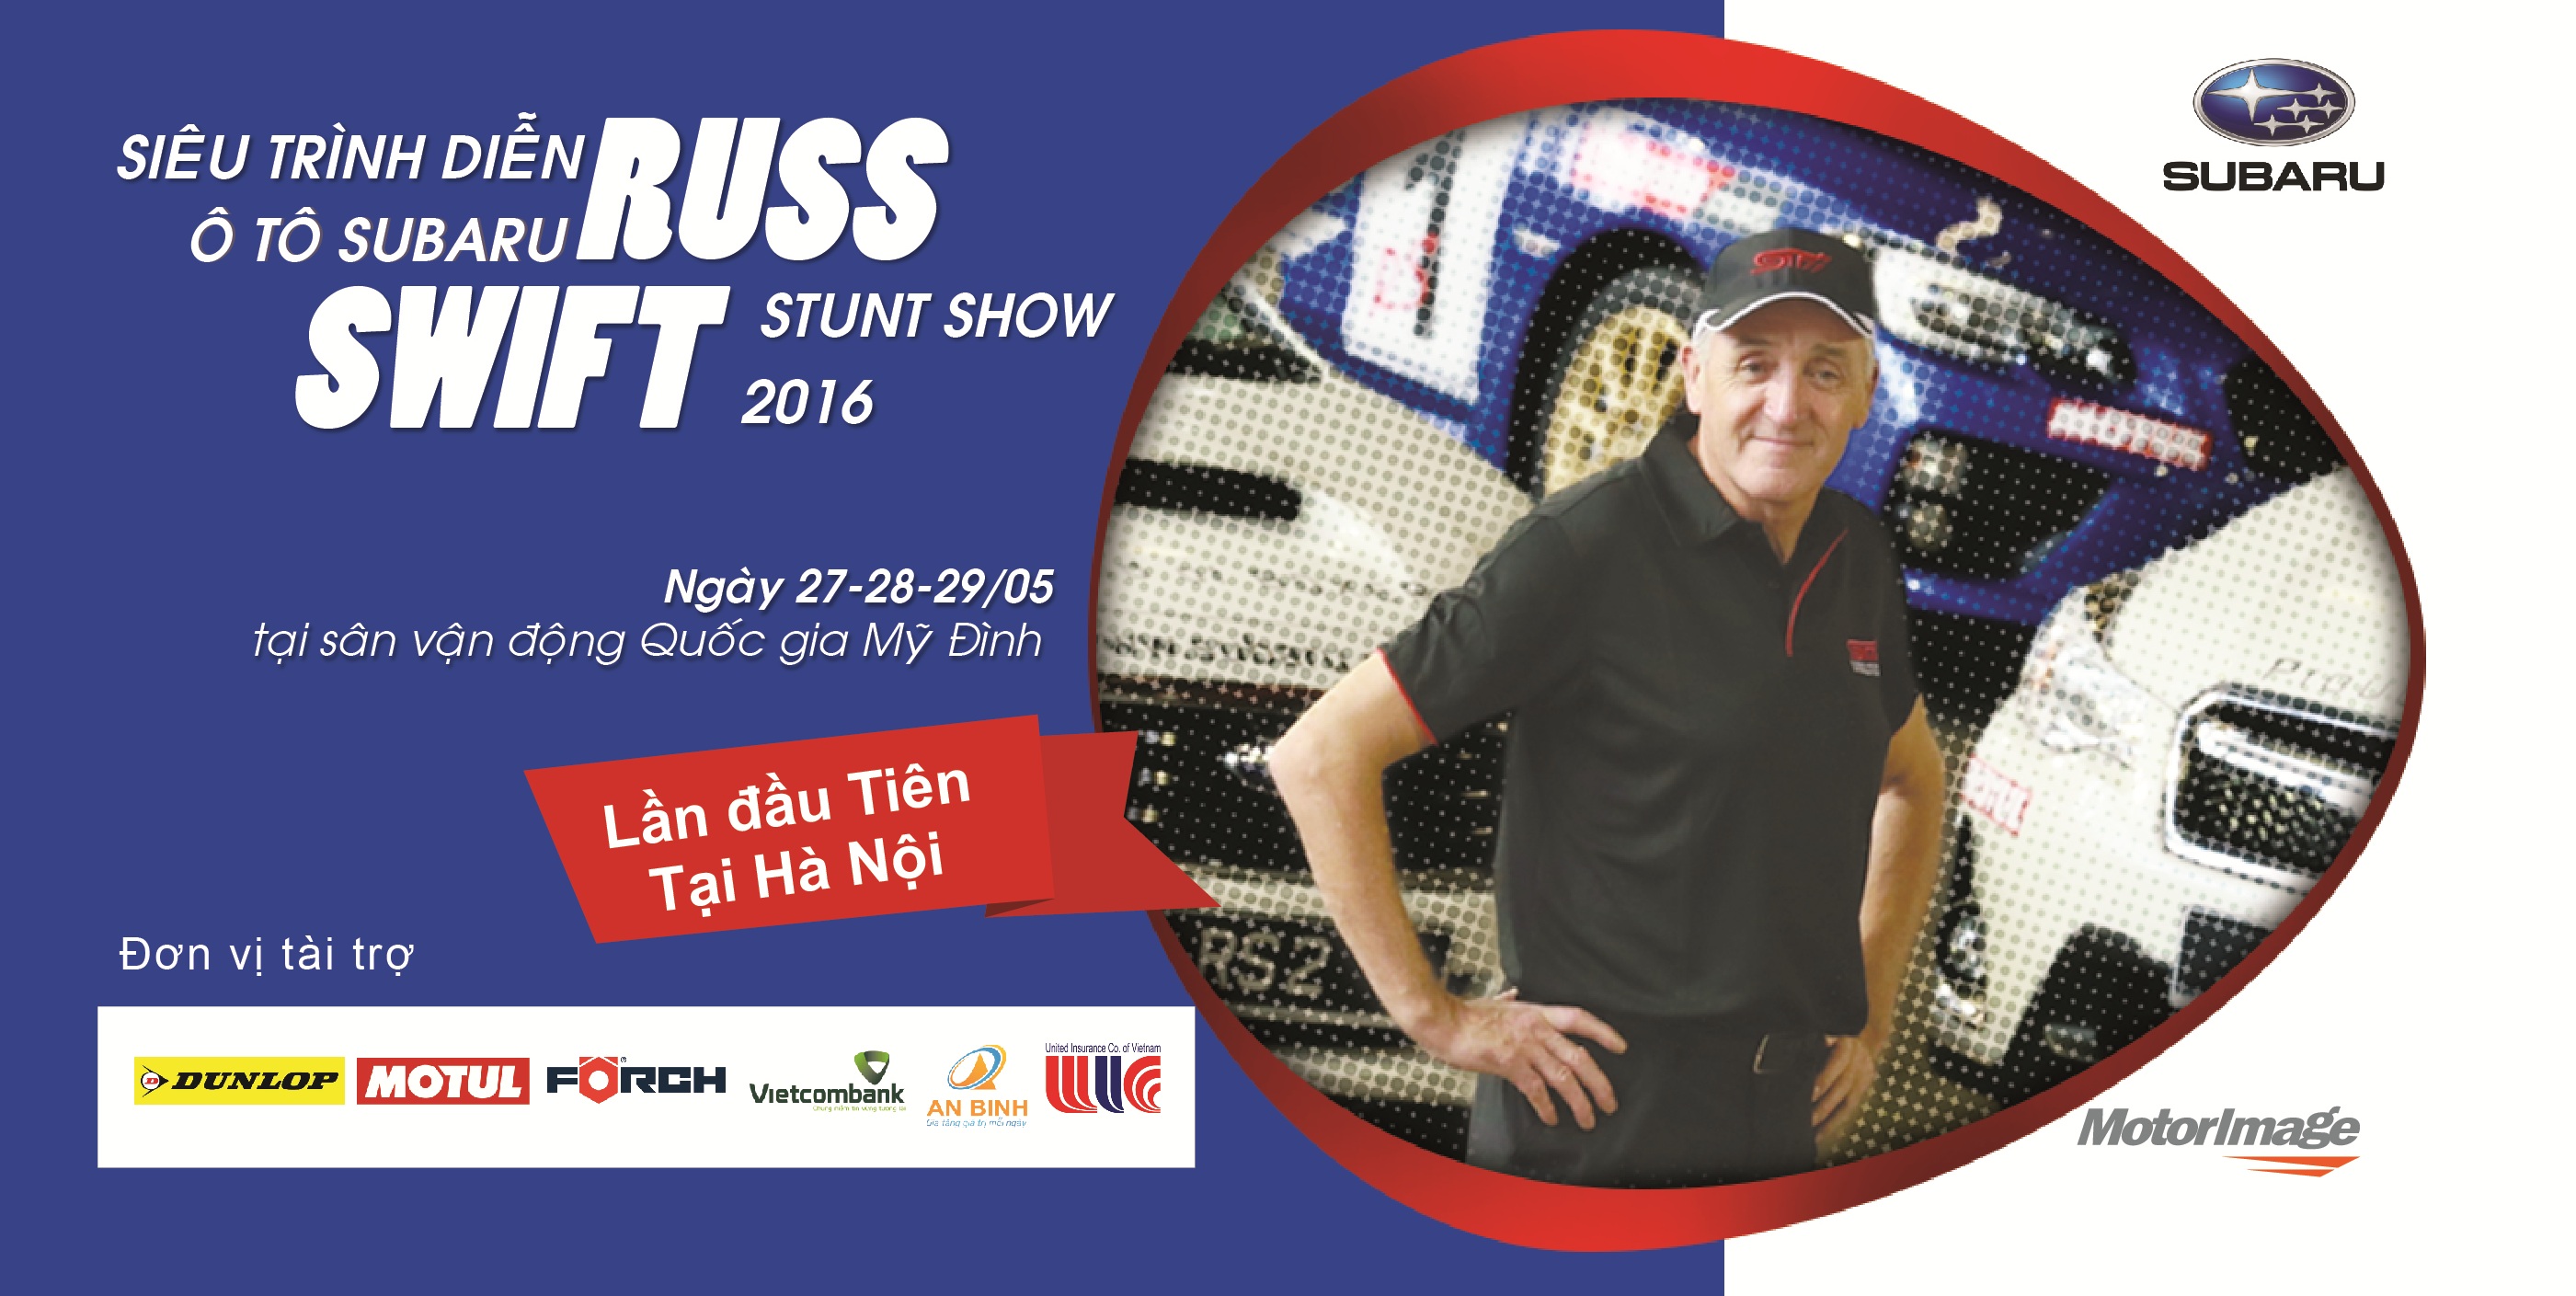 Siêu trình diễn ô tô Subaru Russ Swift 2016 tại Hà Nội